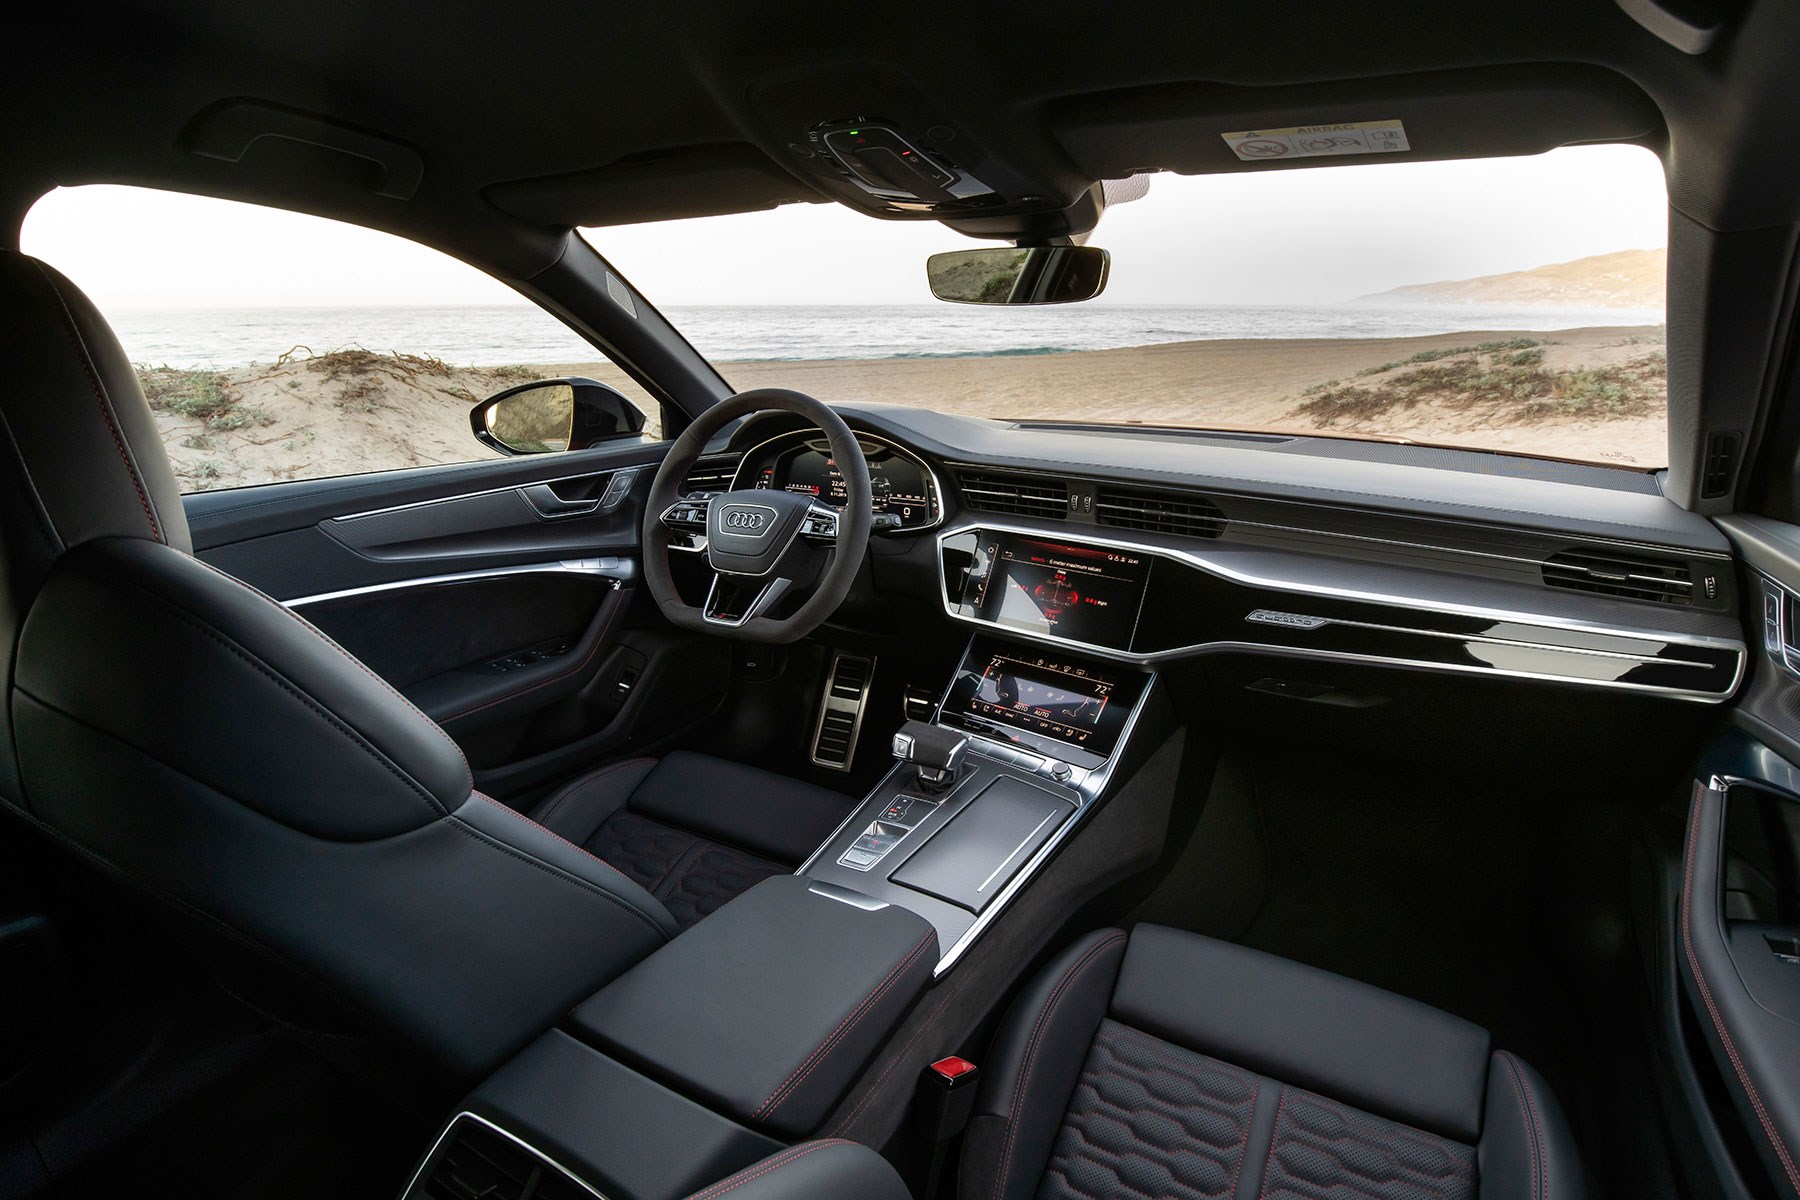 Audi RS6 interior: a posh cabin